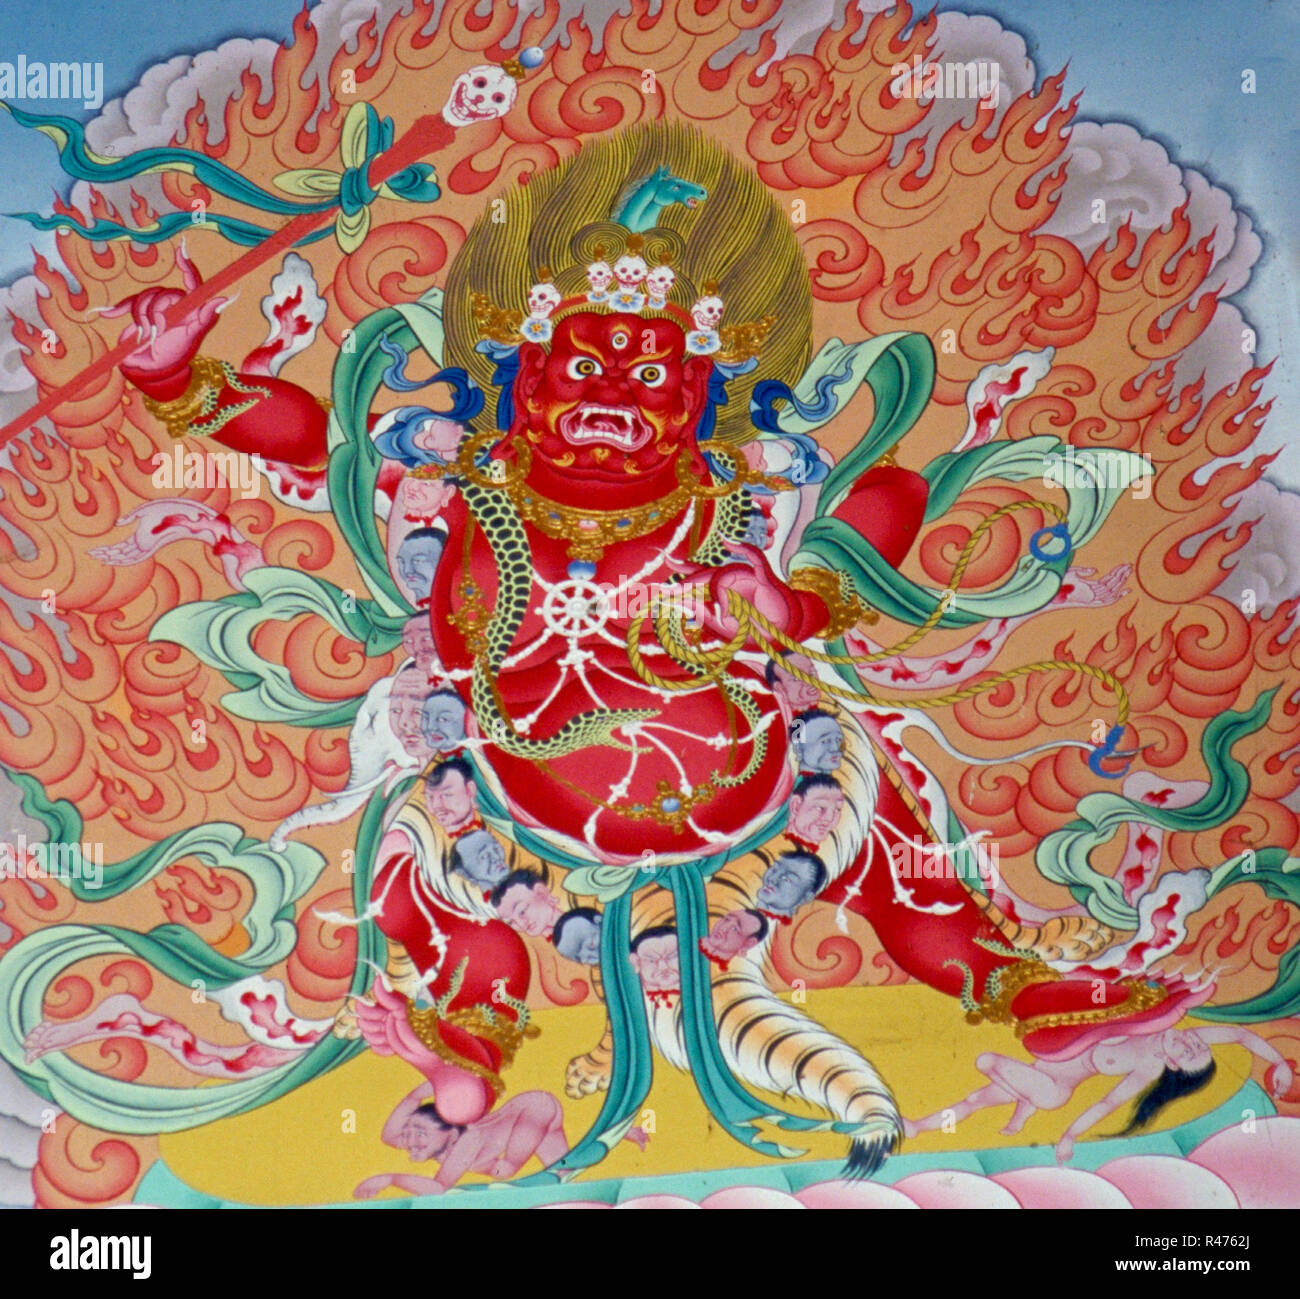 Buddhismus: Der zornige Gott Mahakal, Darstellung in einem nepalesischen Tempel. Mahakala ist eine der wichtigsten Schutzgottheiten der Drukpa-Kagyuep Stock Photo